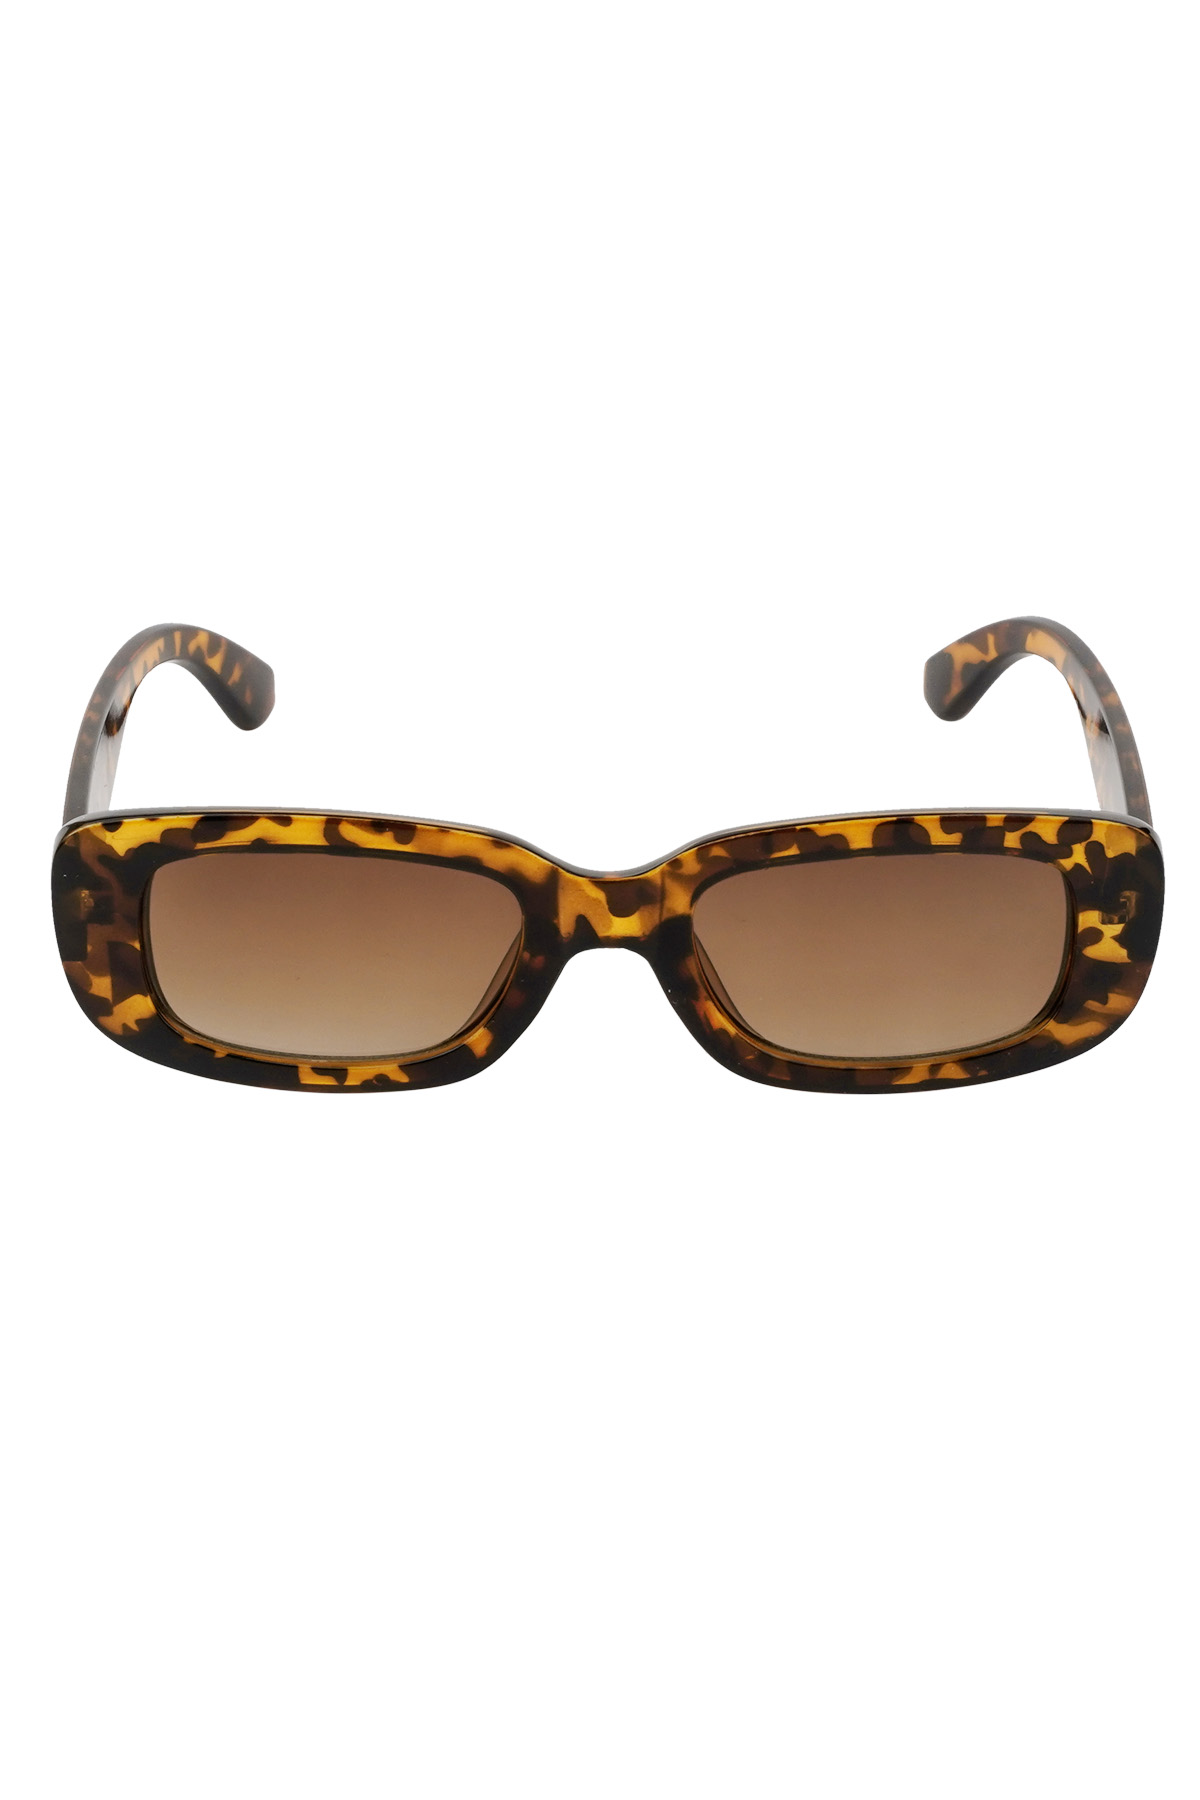 Simple retro sunglasses - brown h5 Picture5